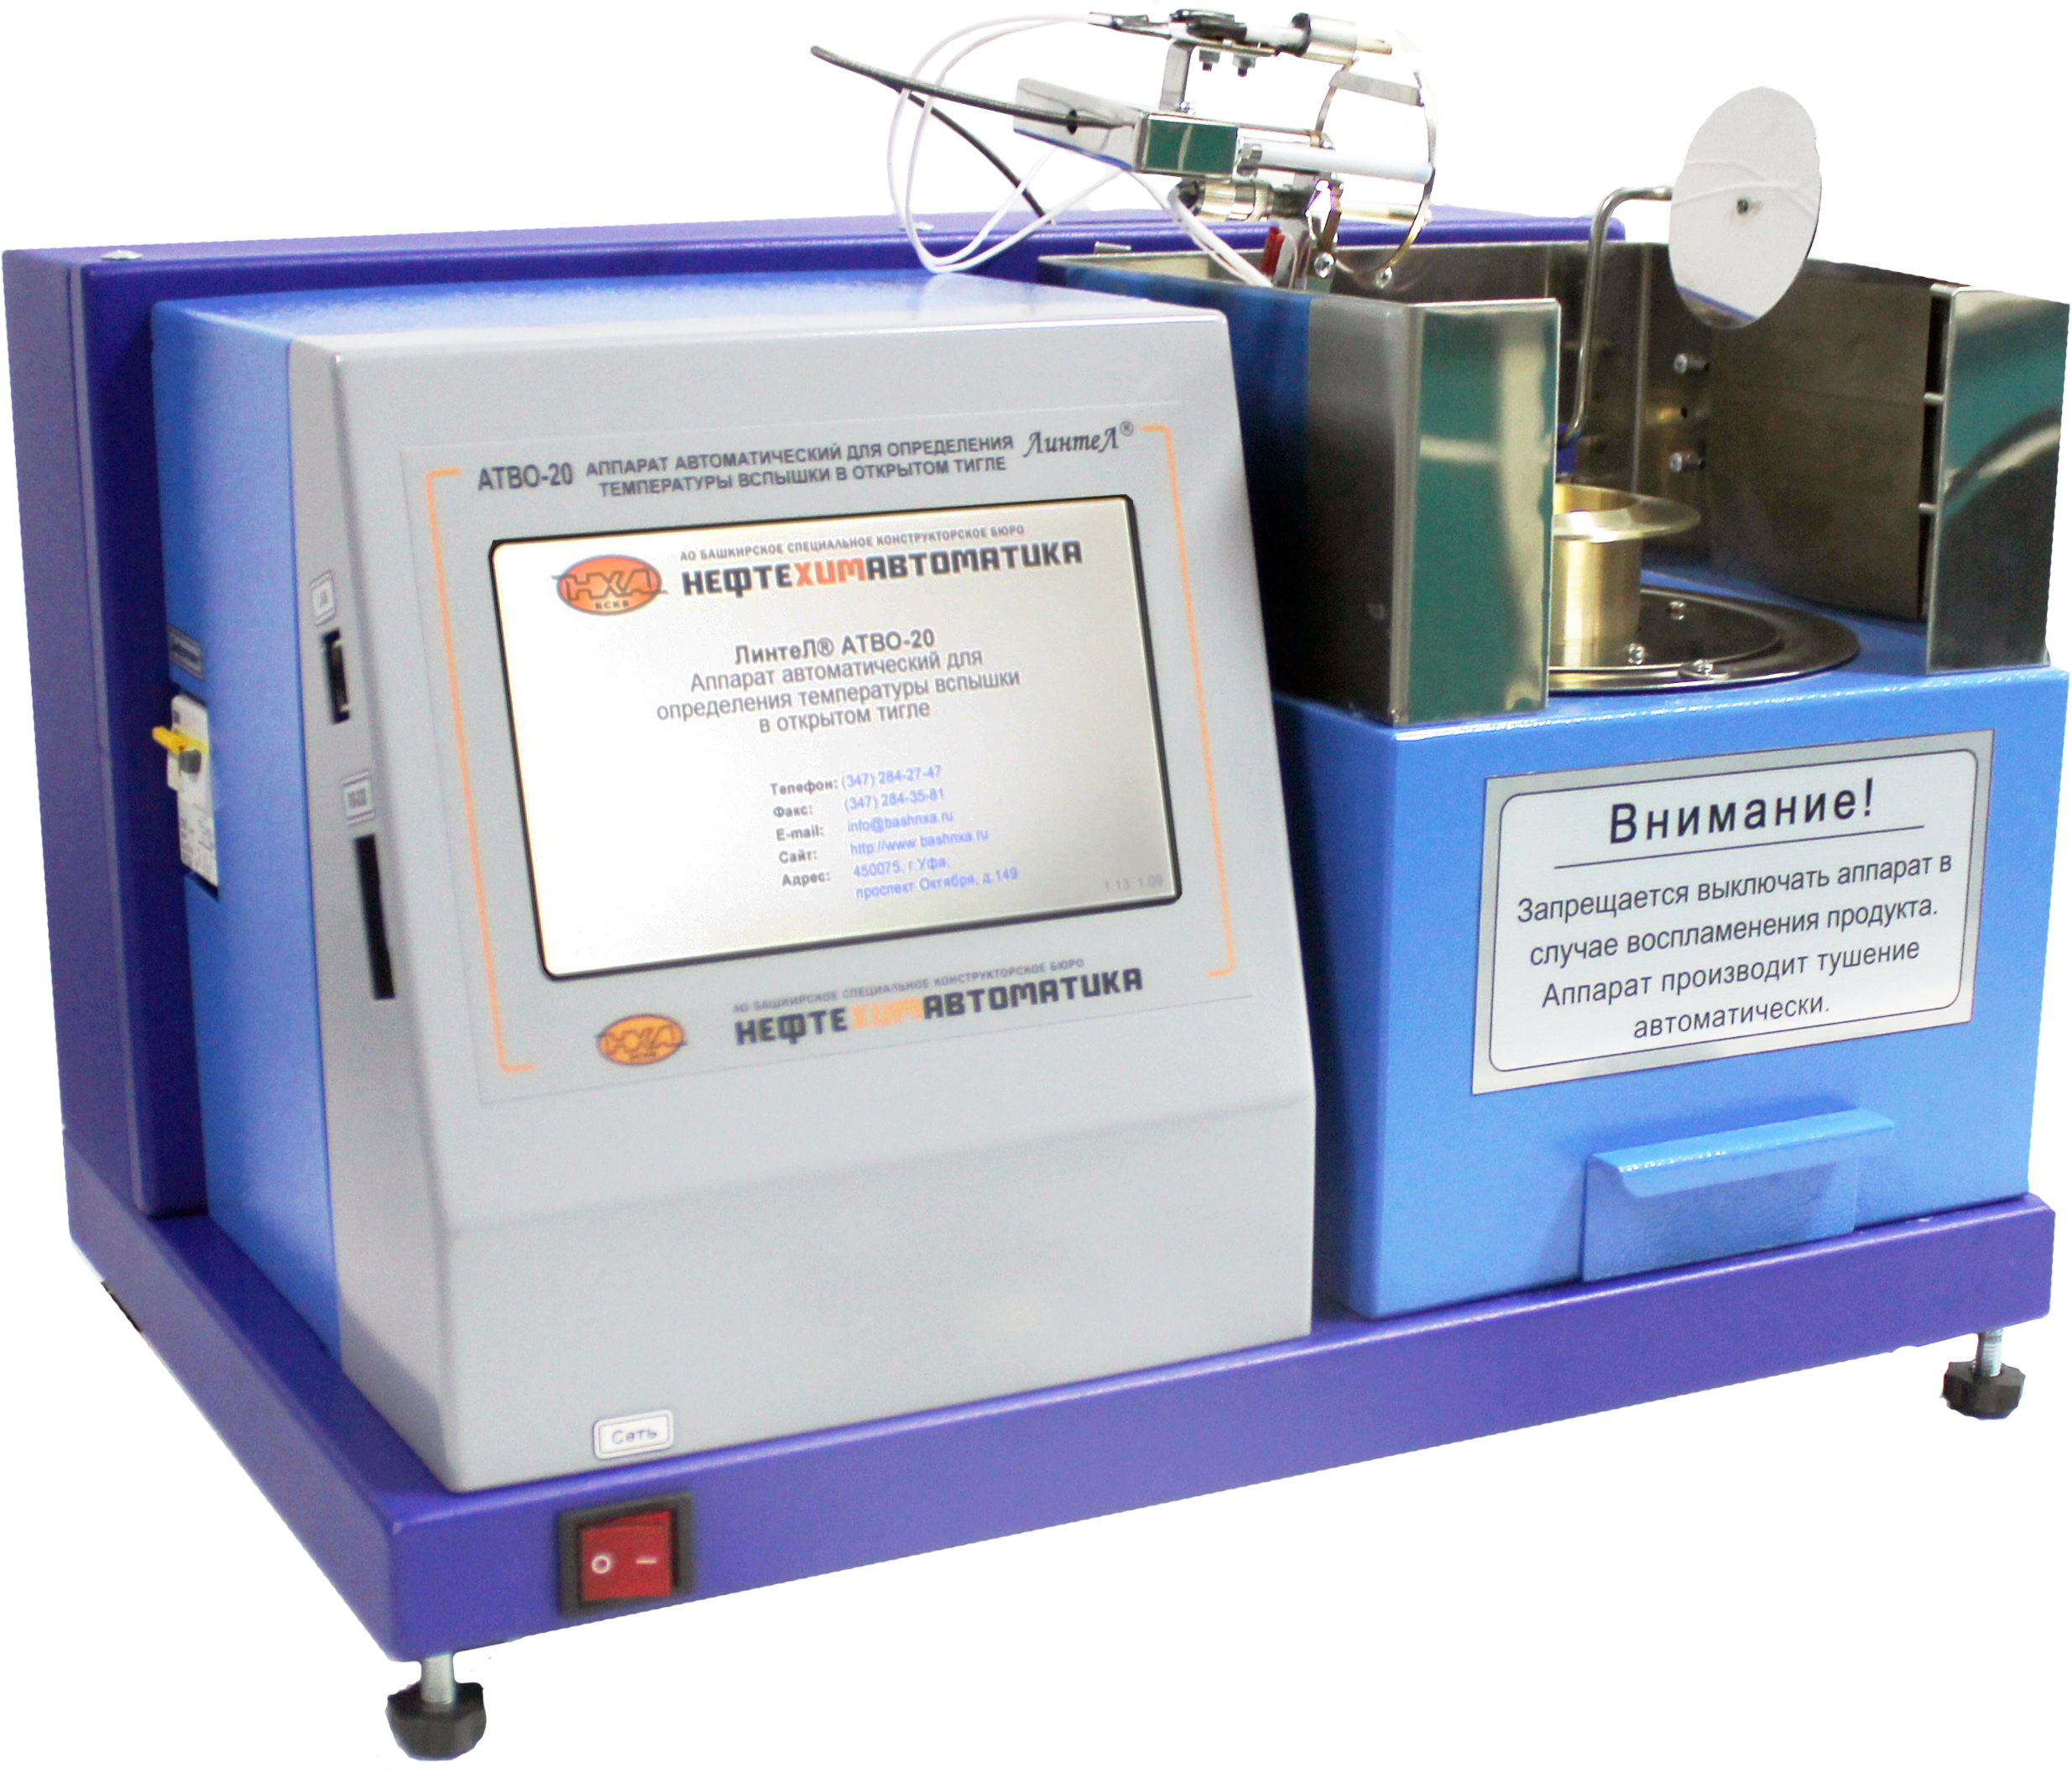 Новинка. ЛинтеЛ АТВО-20-05 - аппарат автоматический для определения температуры вспышки в открытом тигле.